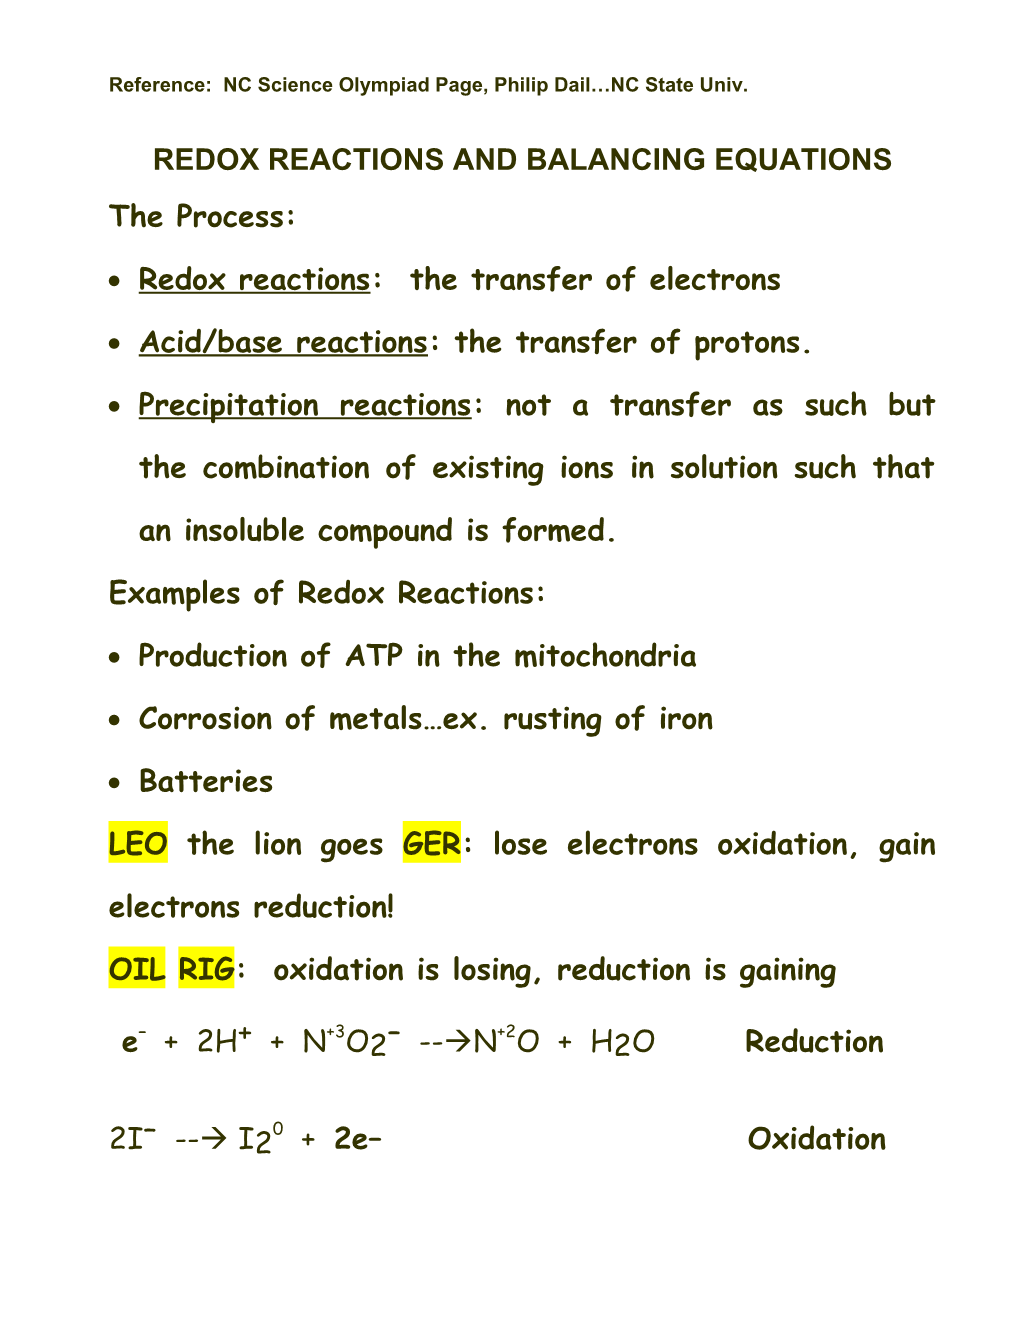 Redox Reactions and Balancing Equations